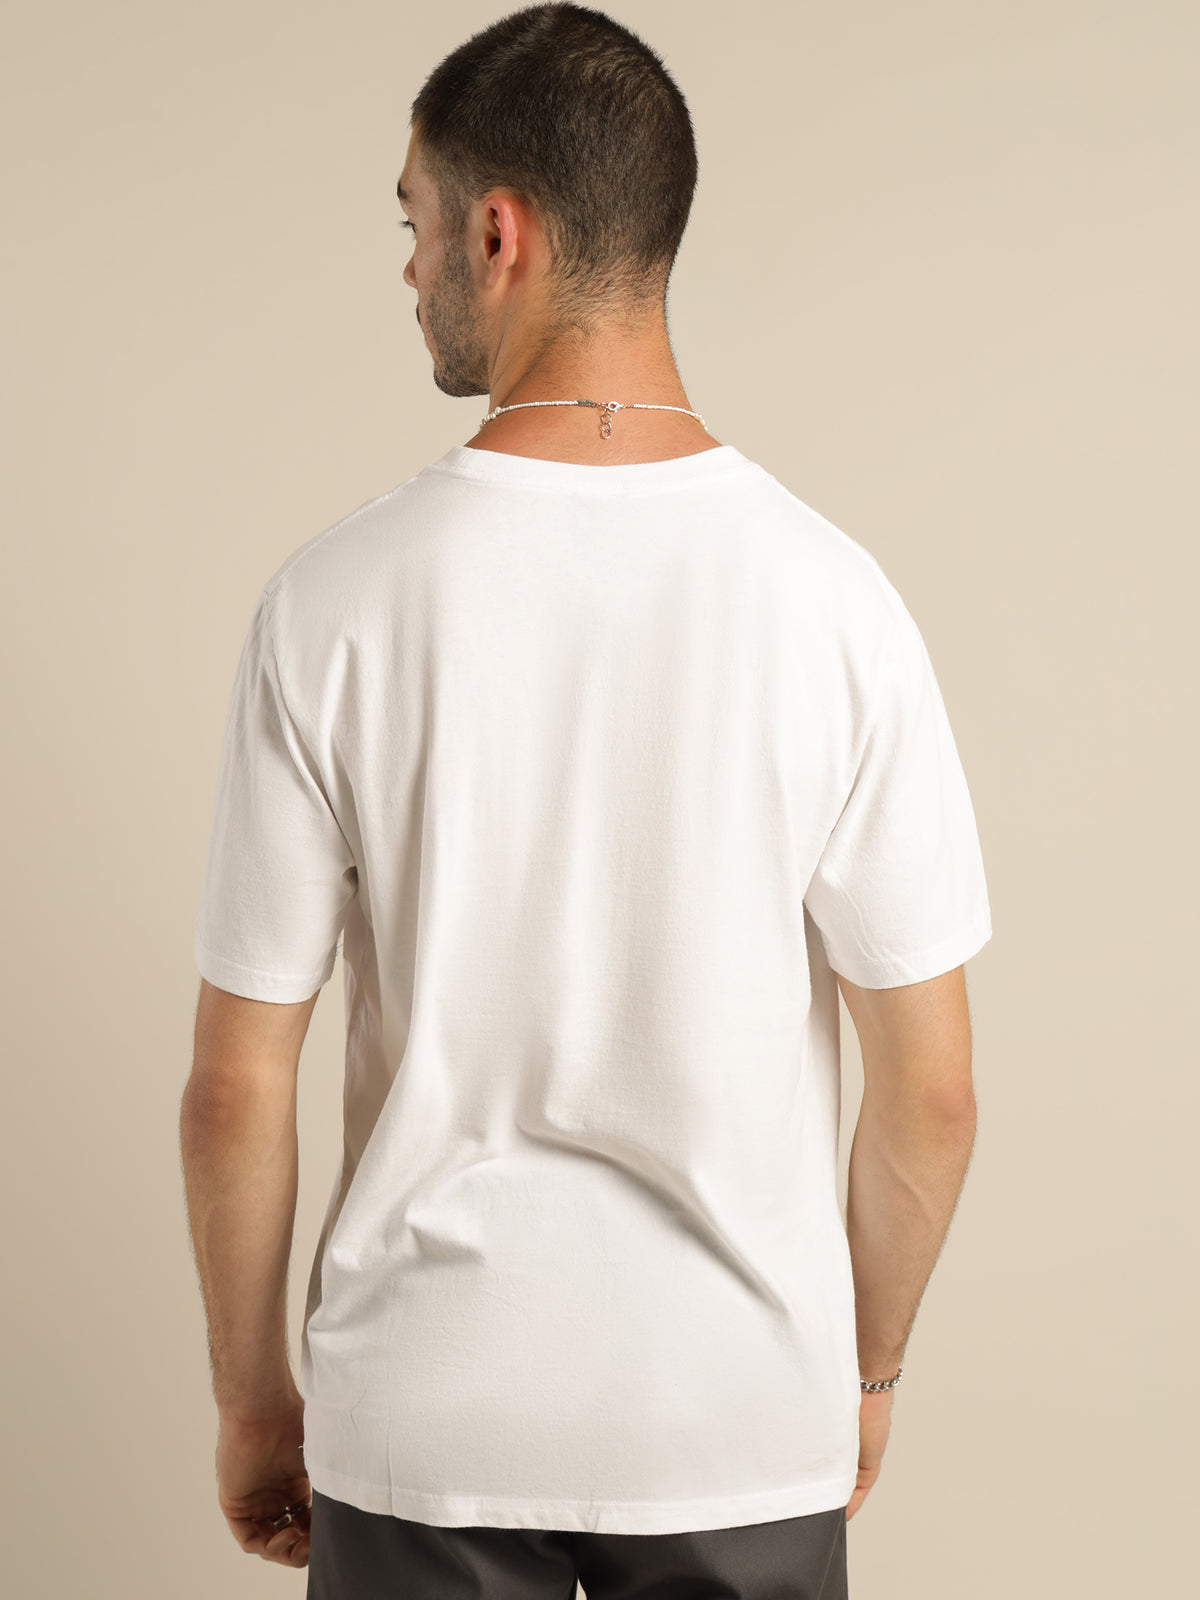 November 2013 T-Shirt in White